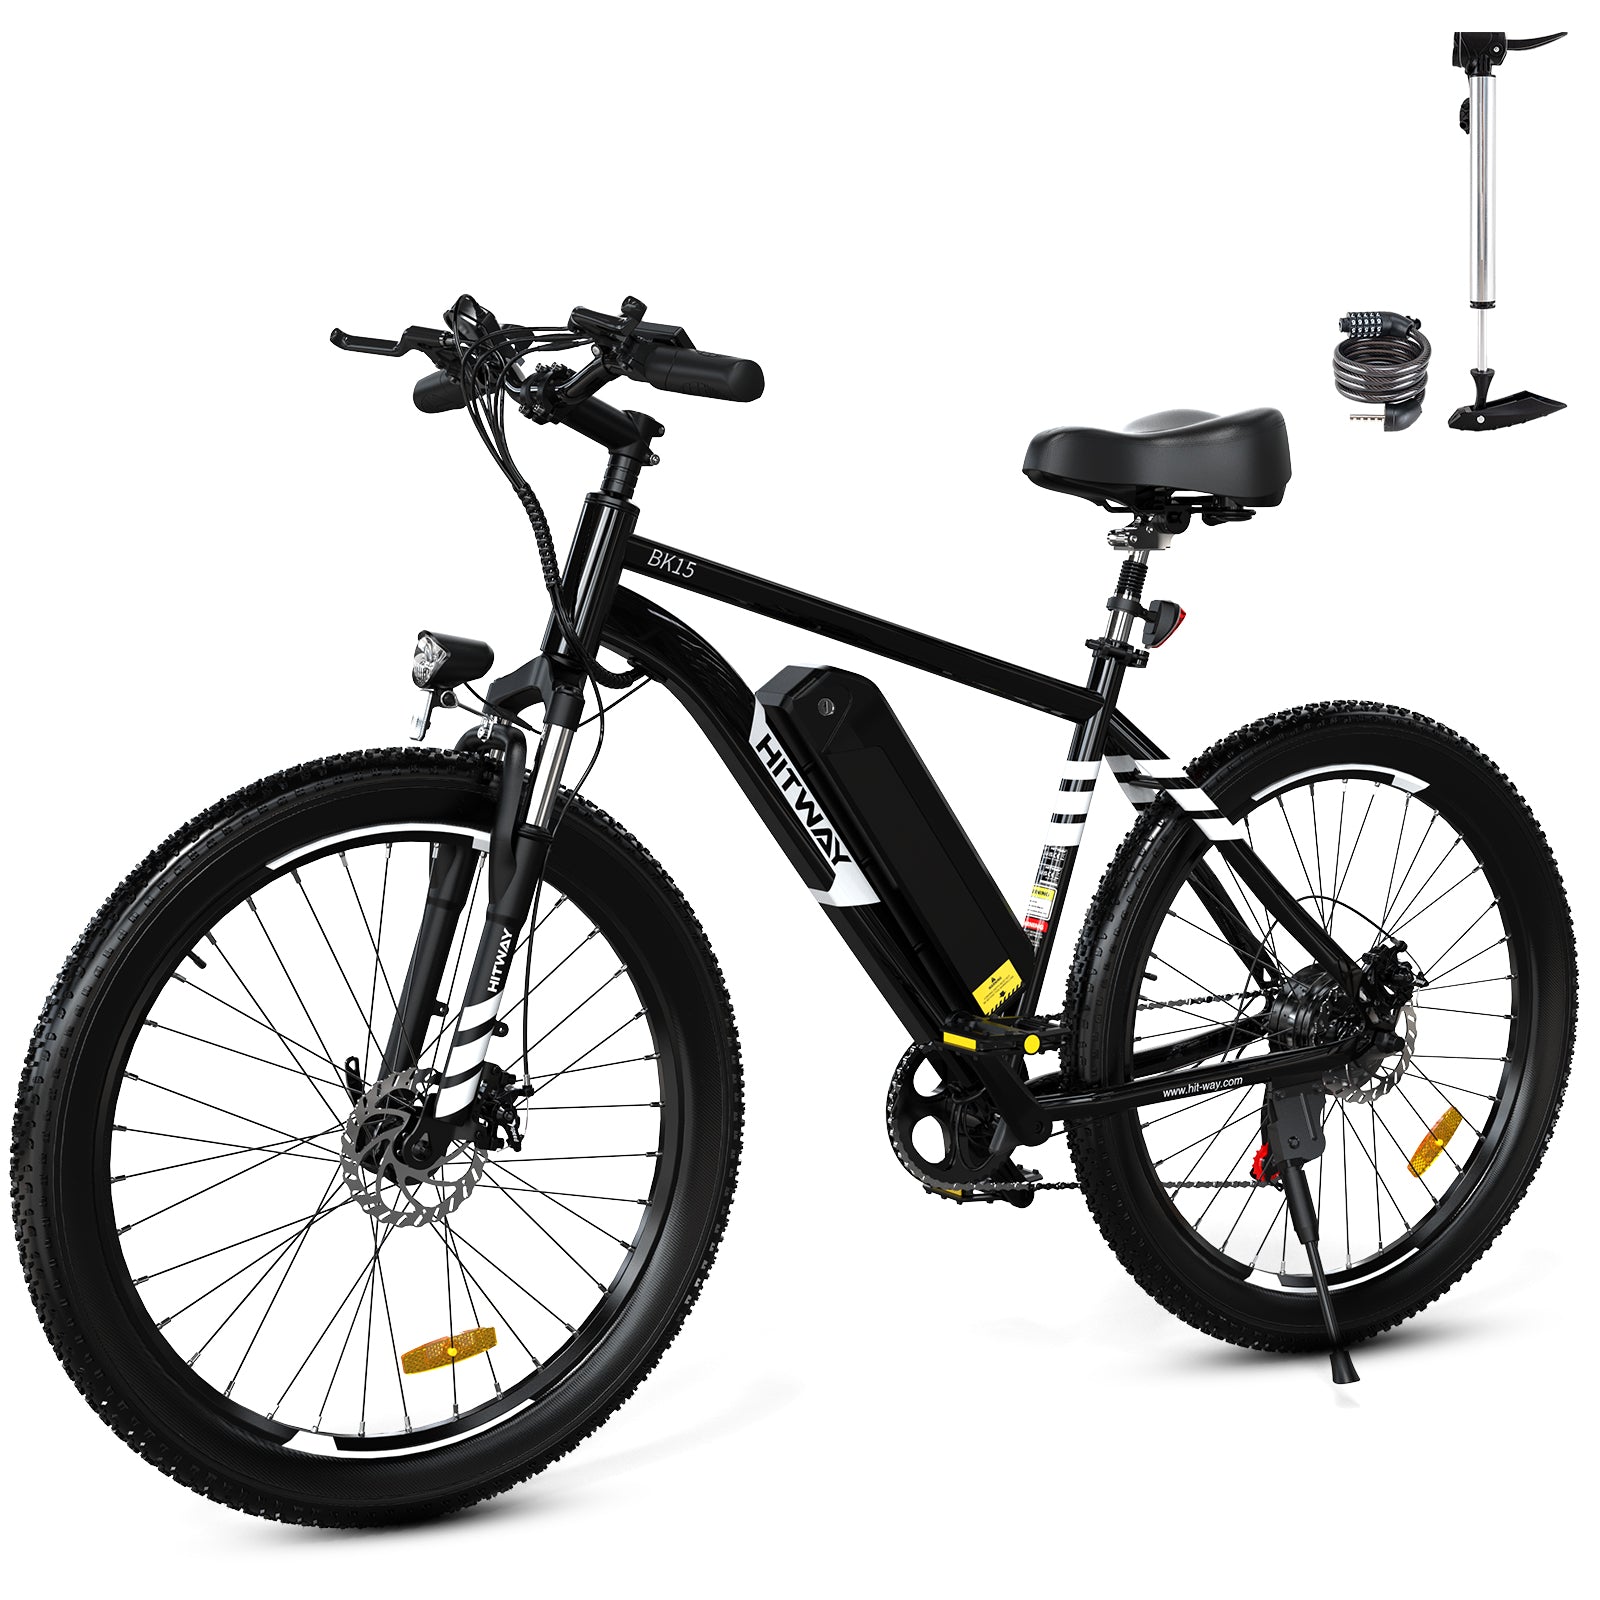 Bici elettrica per pneumatici grassi BK15 3.0